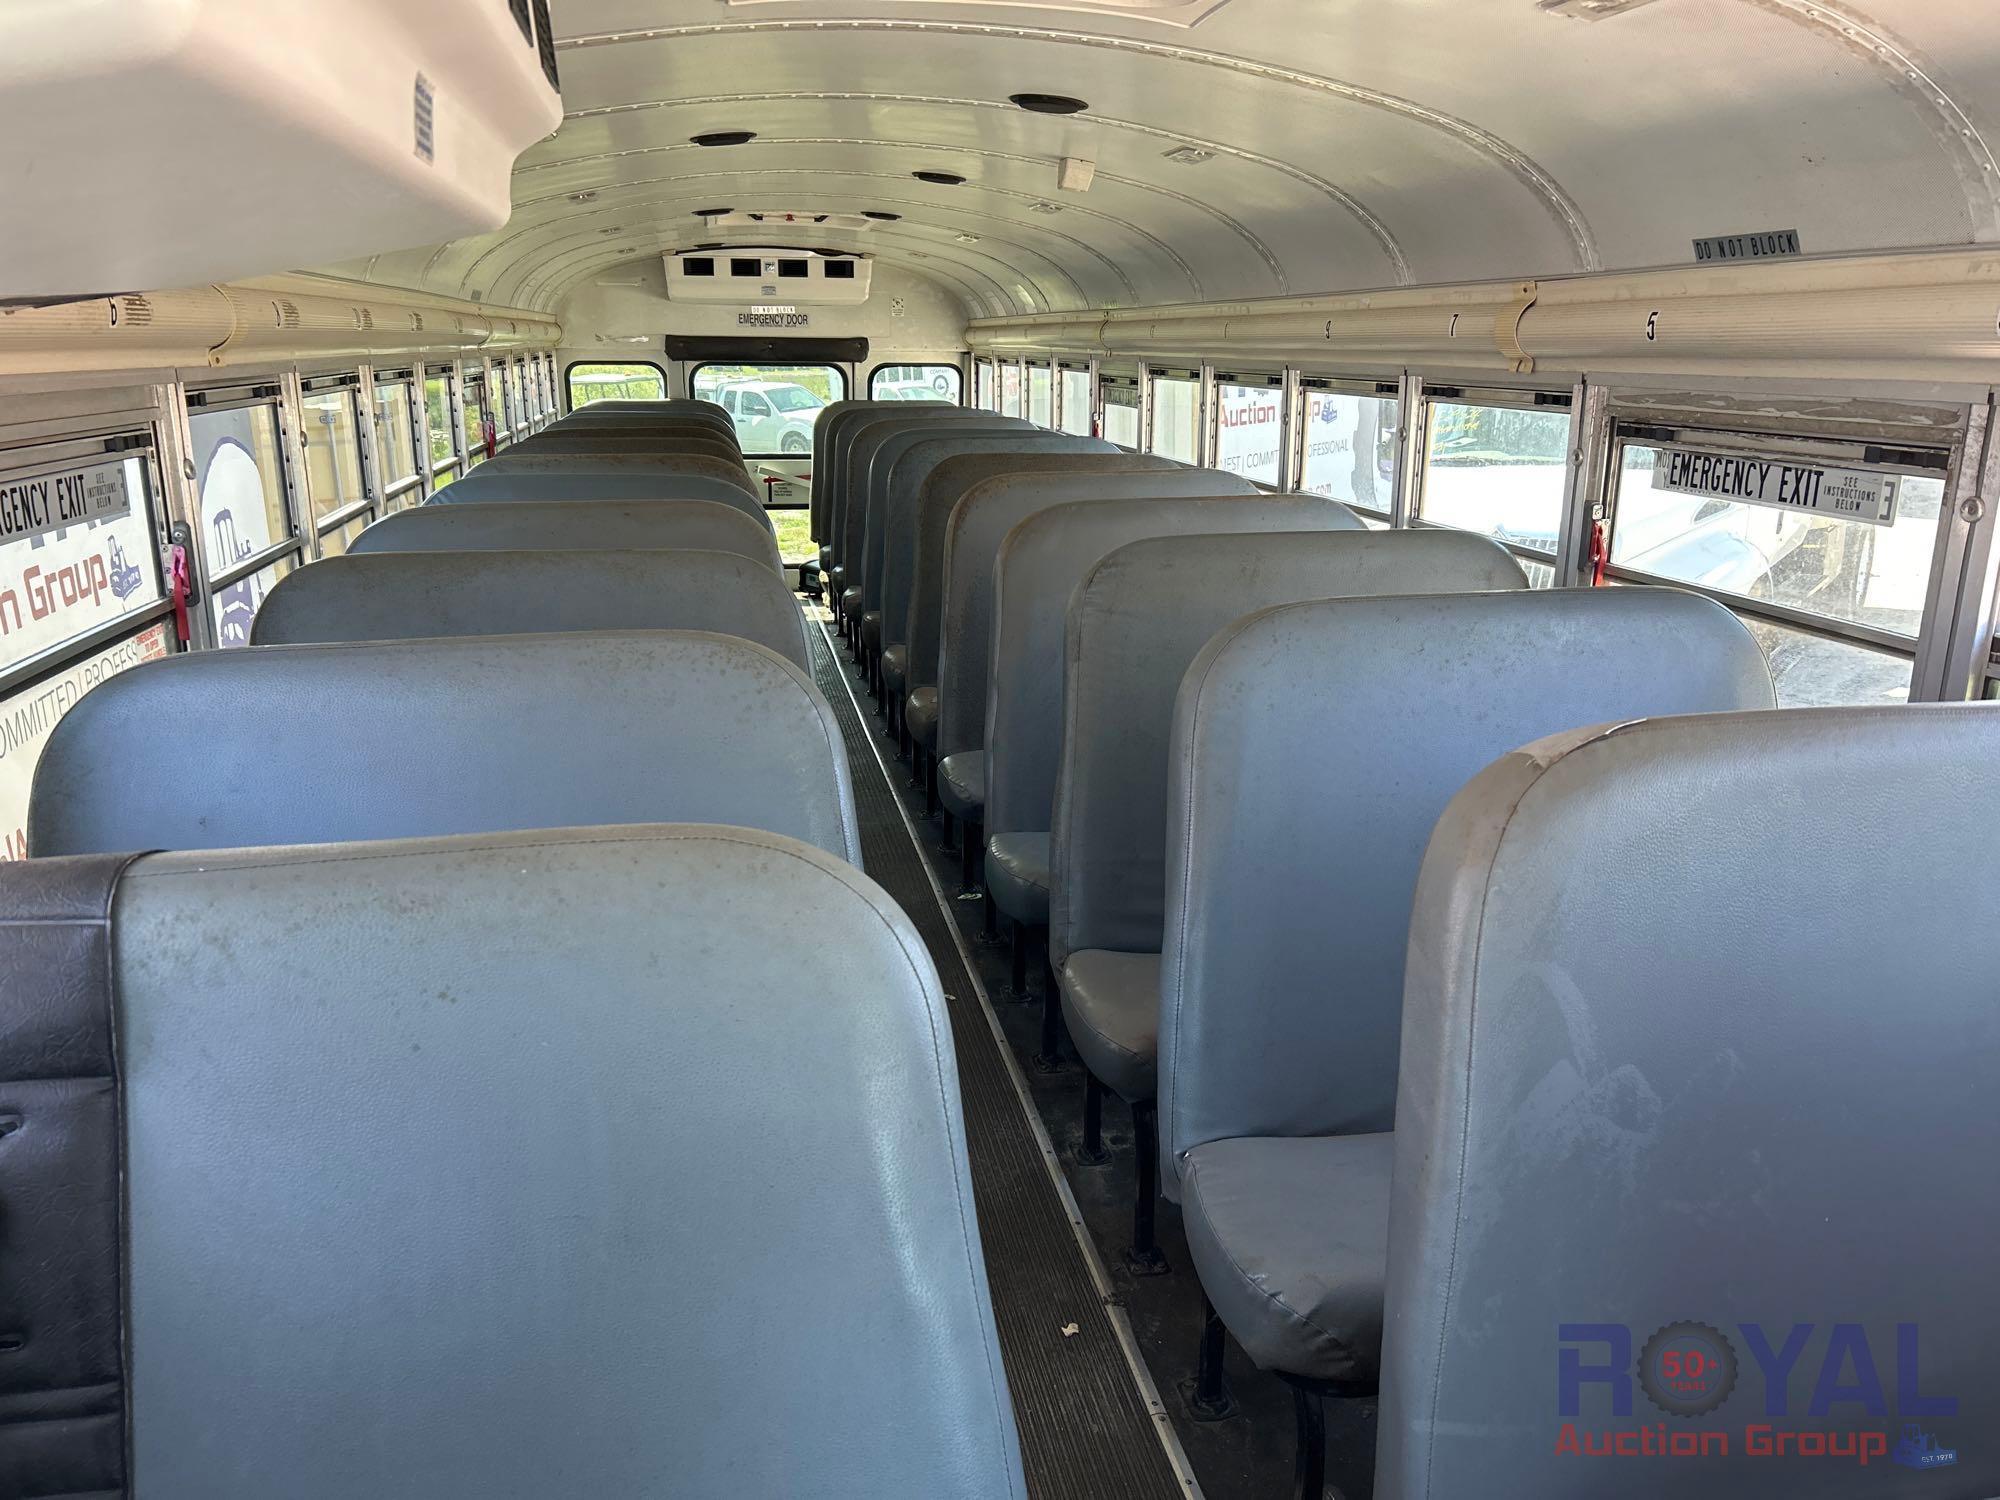 2008 Blue Bird BB Conventional 72 Passenger School Bus